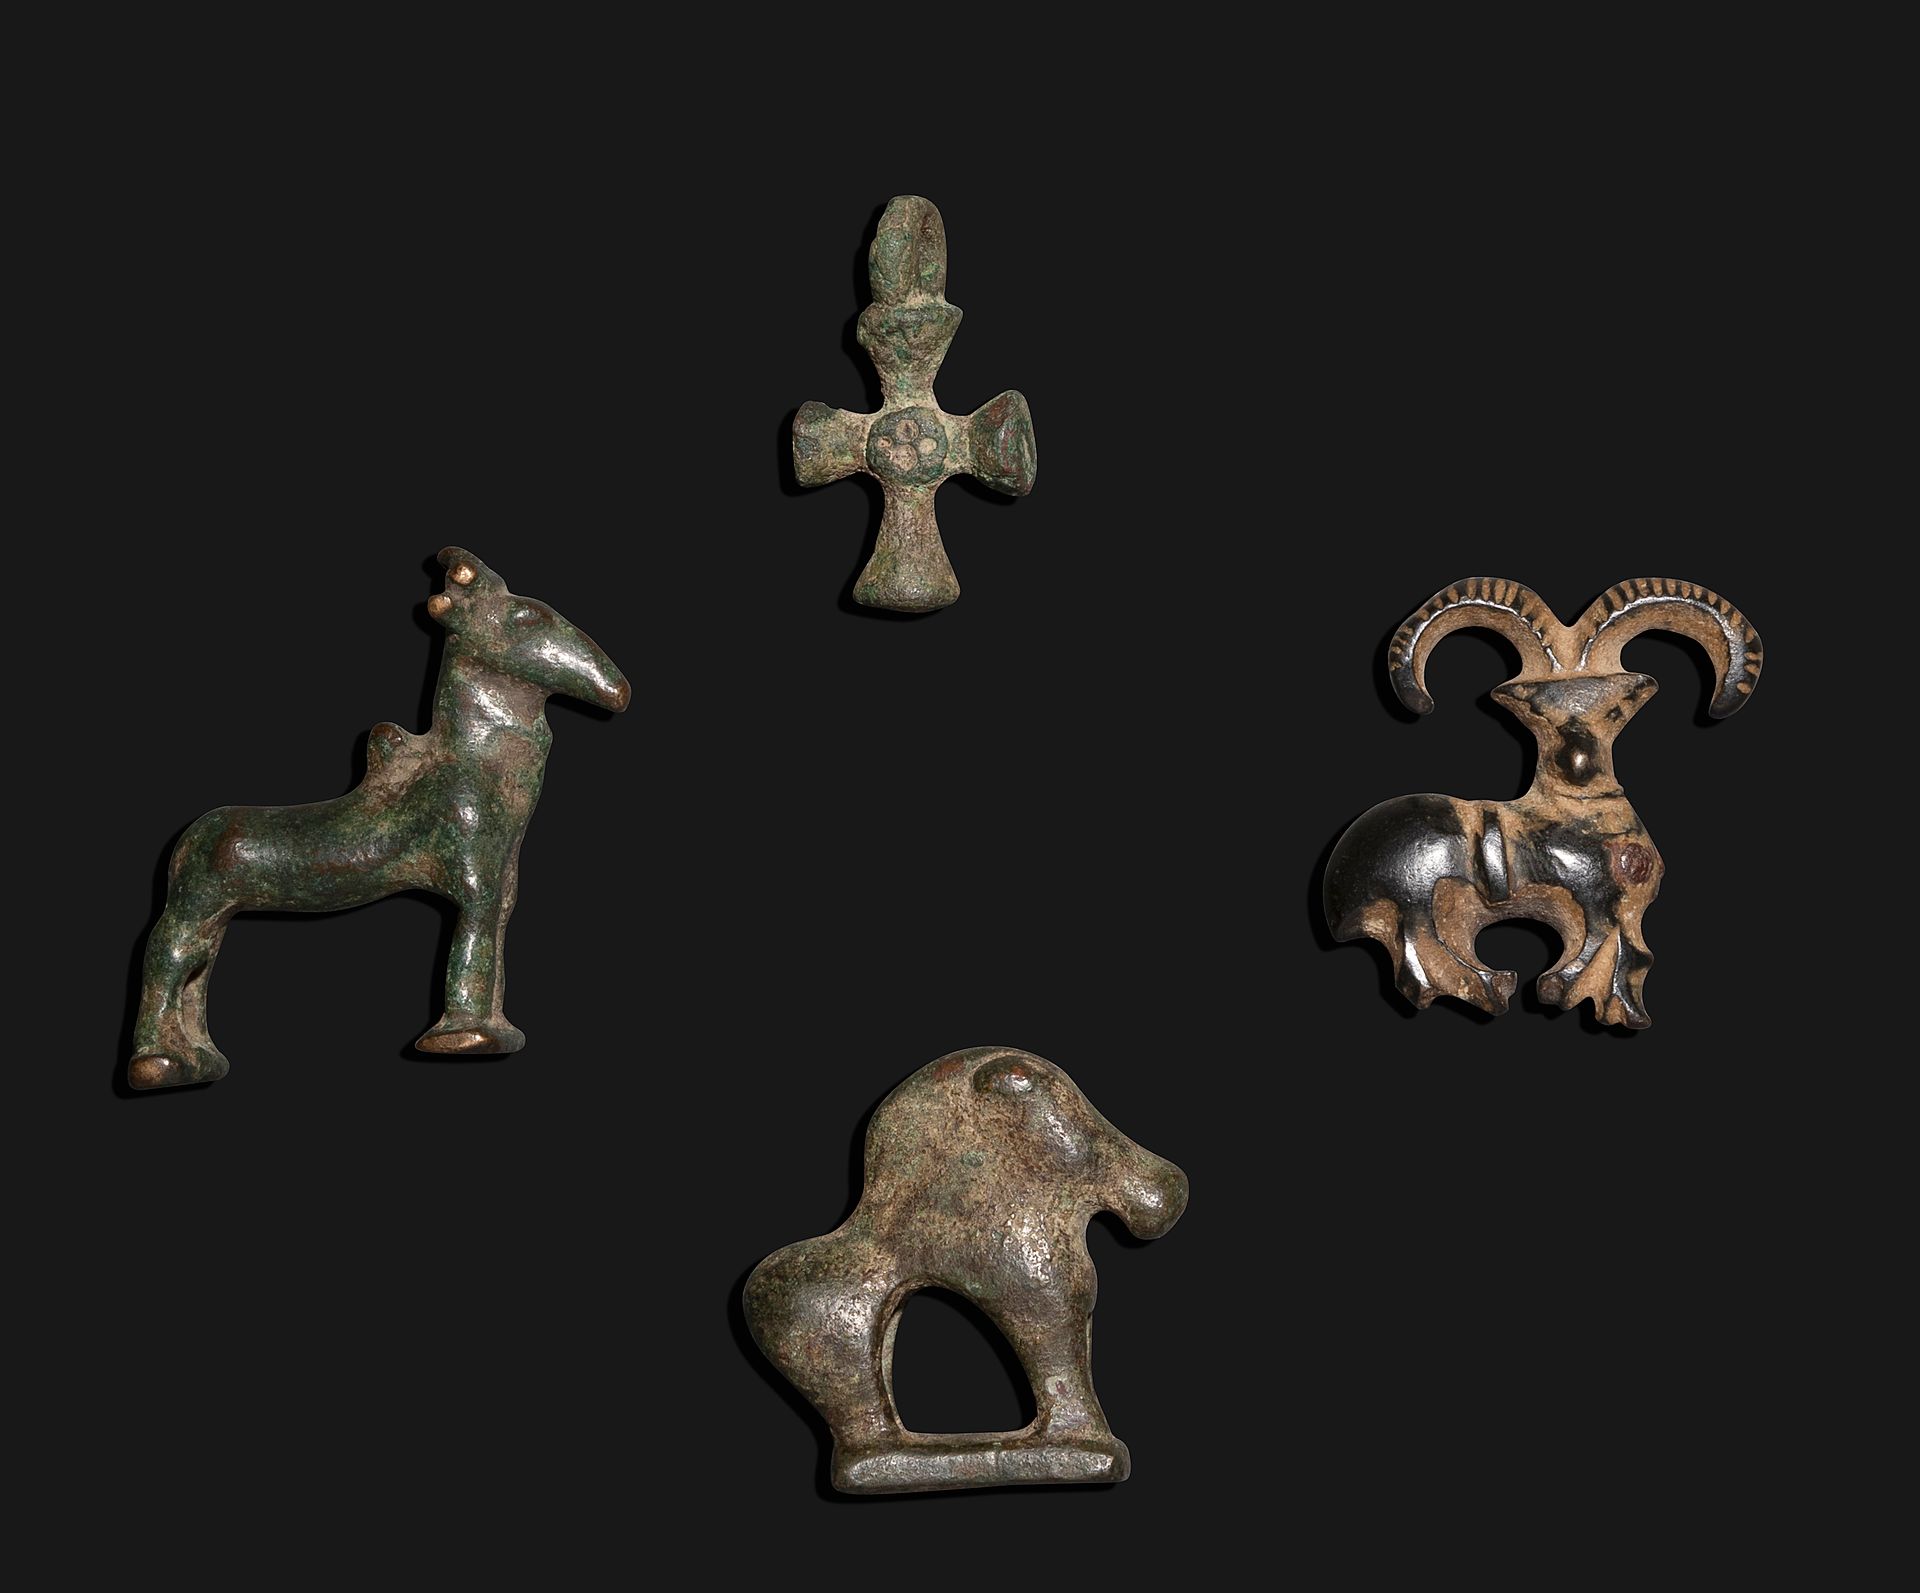 Null 一件拍品收集了一个非常漂亮的代表山羊的腓骨，两个放大的青铜器，和一个小吊坠。

鲁里斯坦，古代和中世纪，伊朗

青铜器，非常漂亮的古代氧化绿色斑纹

&hellip;